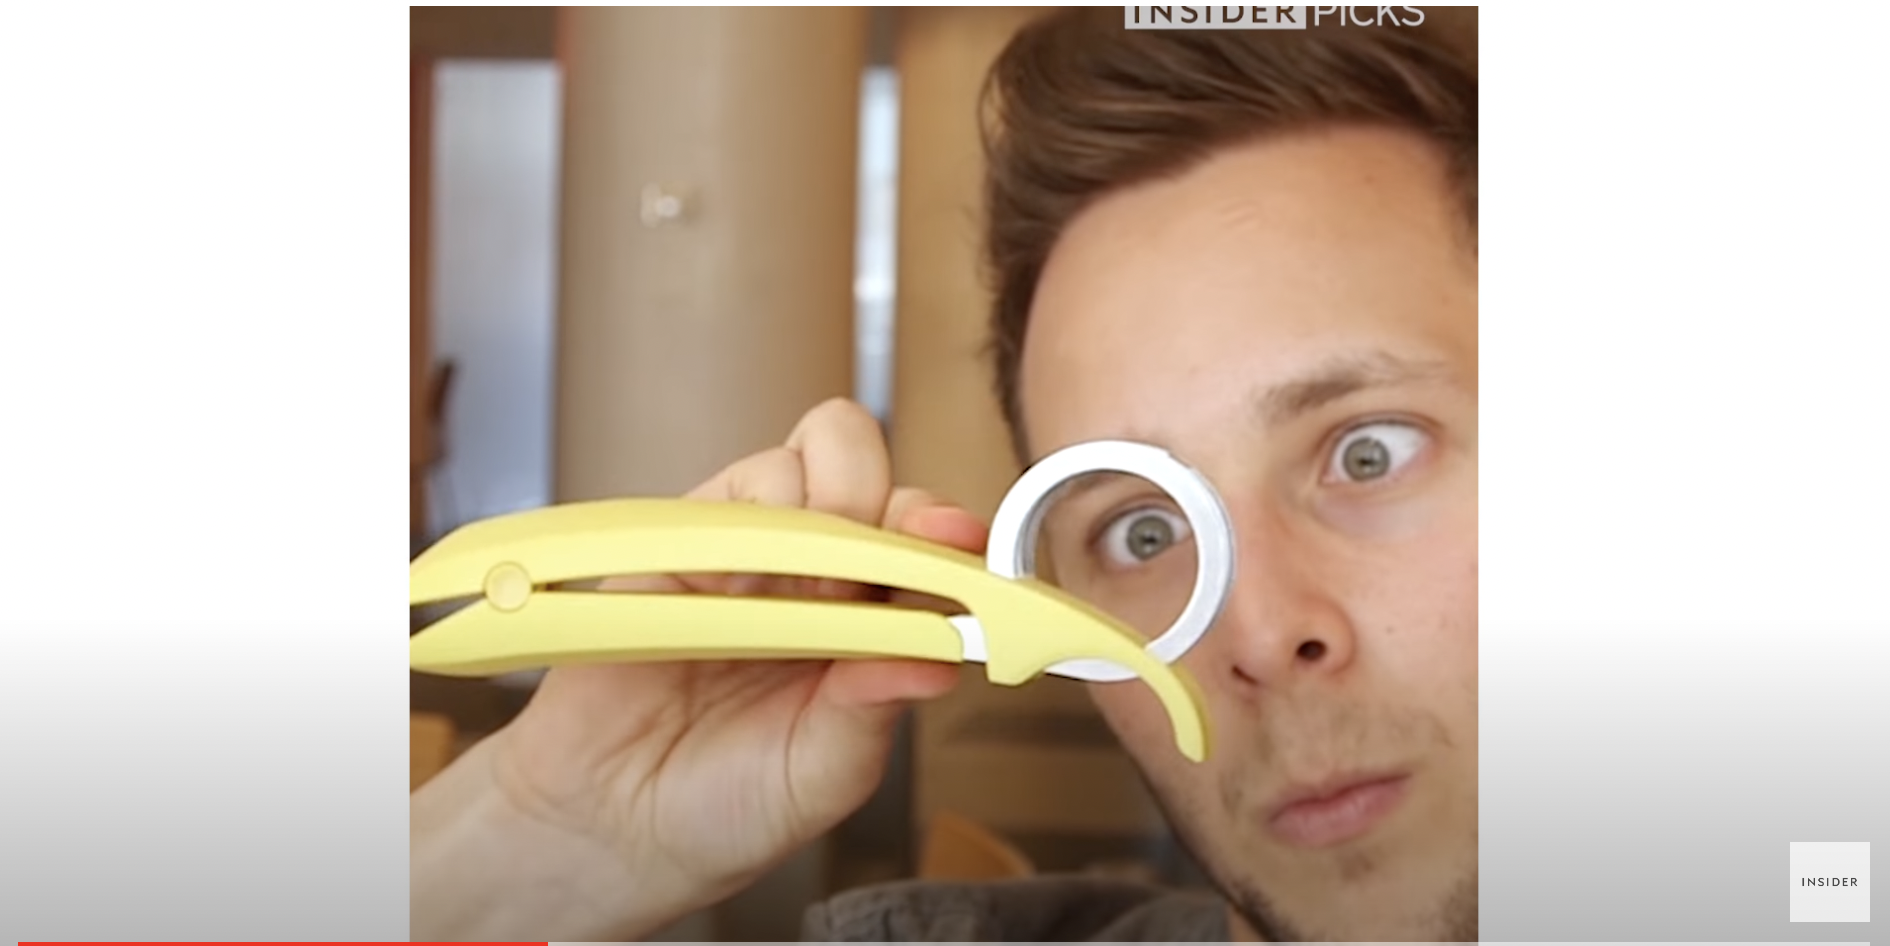 Una cortadora de plátanos | Fuente: YouTube/Insider